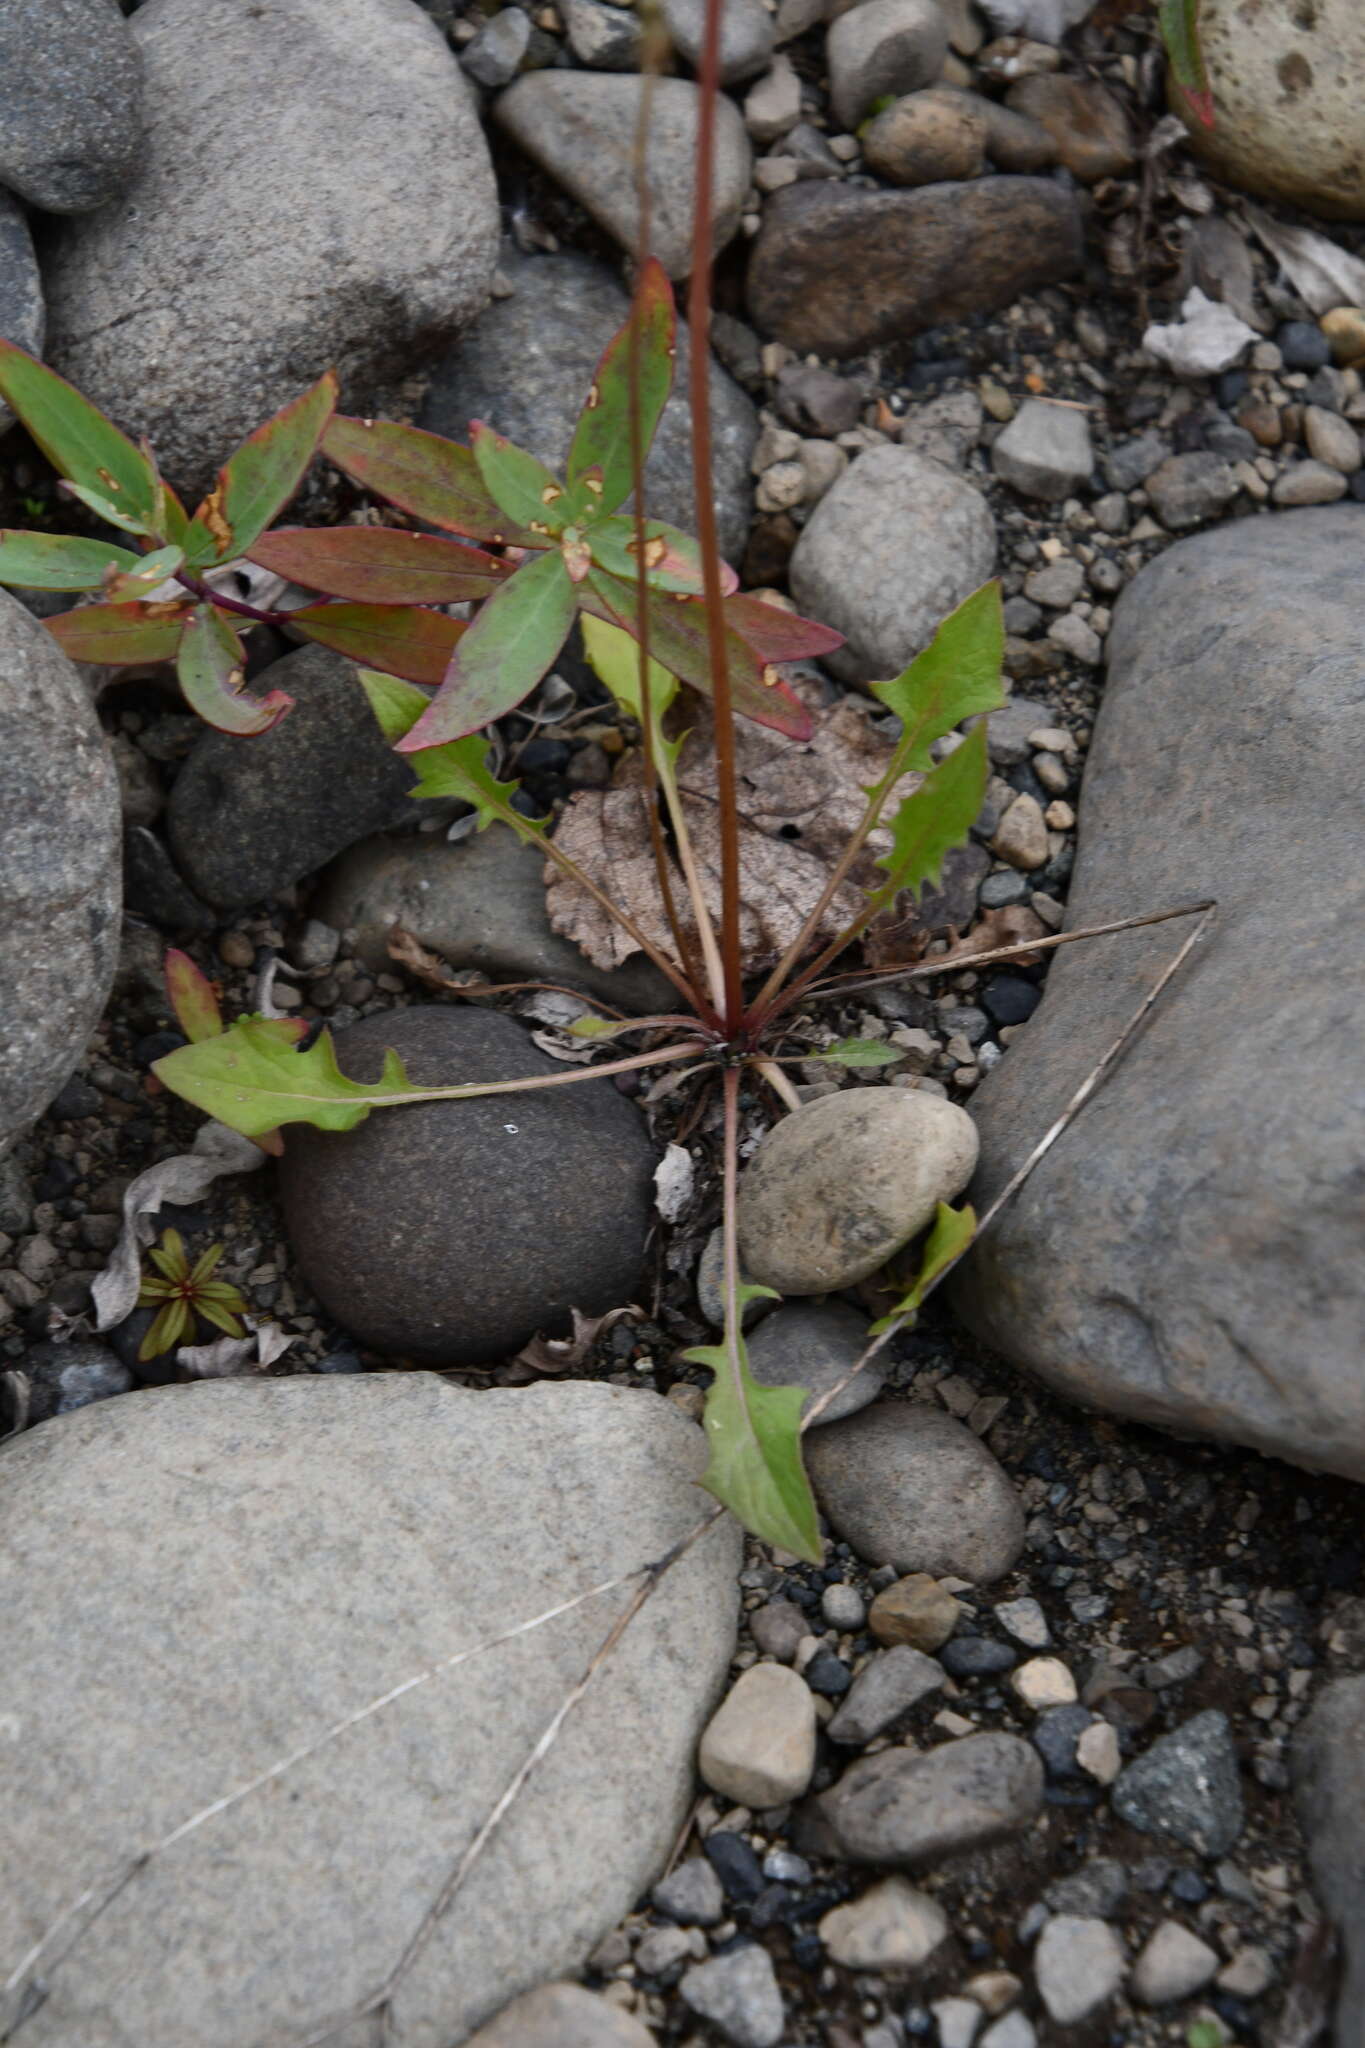 Image of Crepis multicaulis Ledeb.